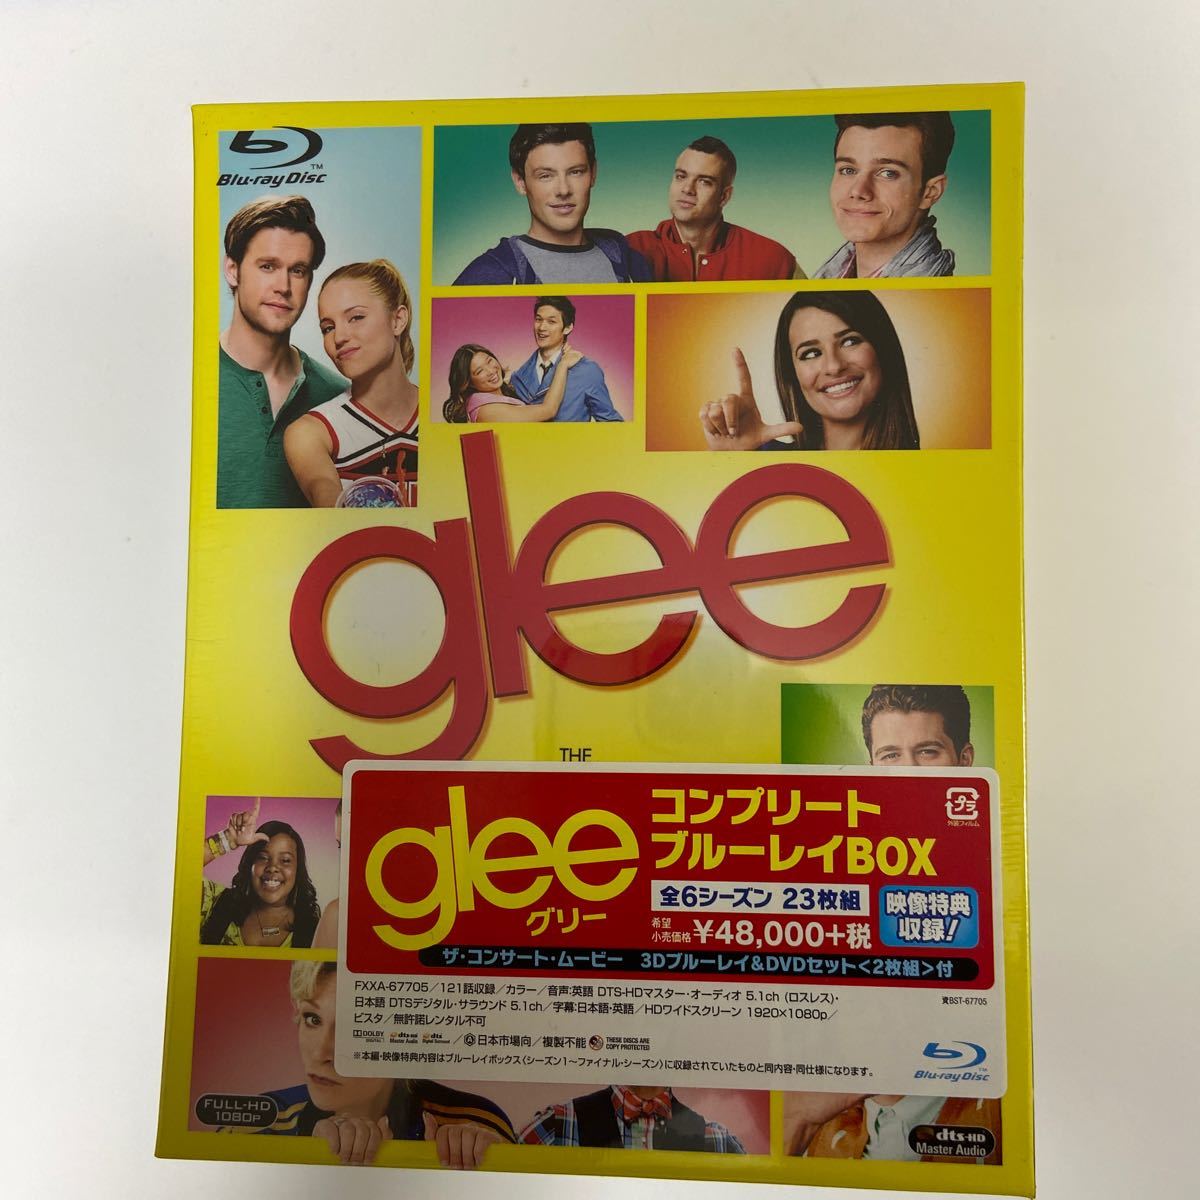 レア 新品 未開封 Amazon限定glee/グリー コンプリート ブルーレイBOX Blu-ray